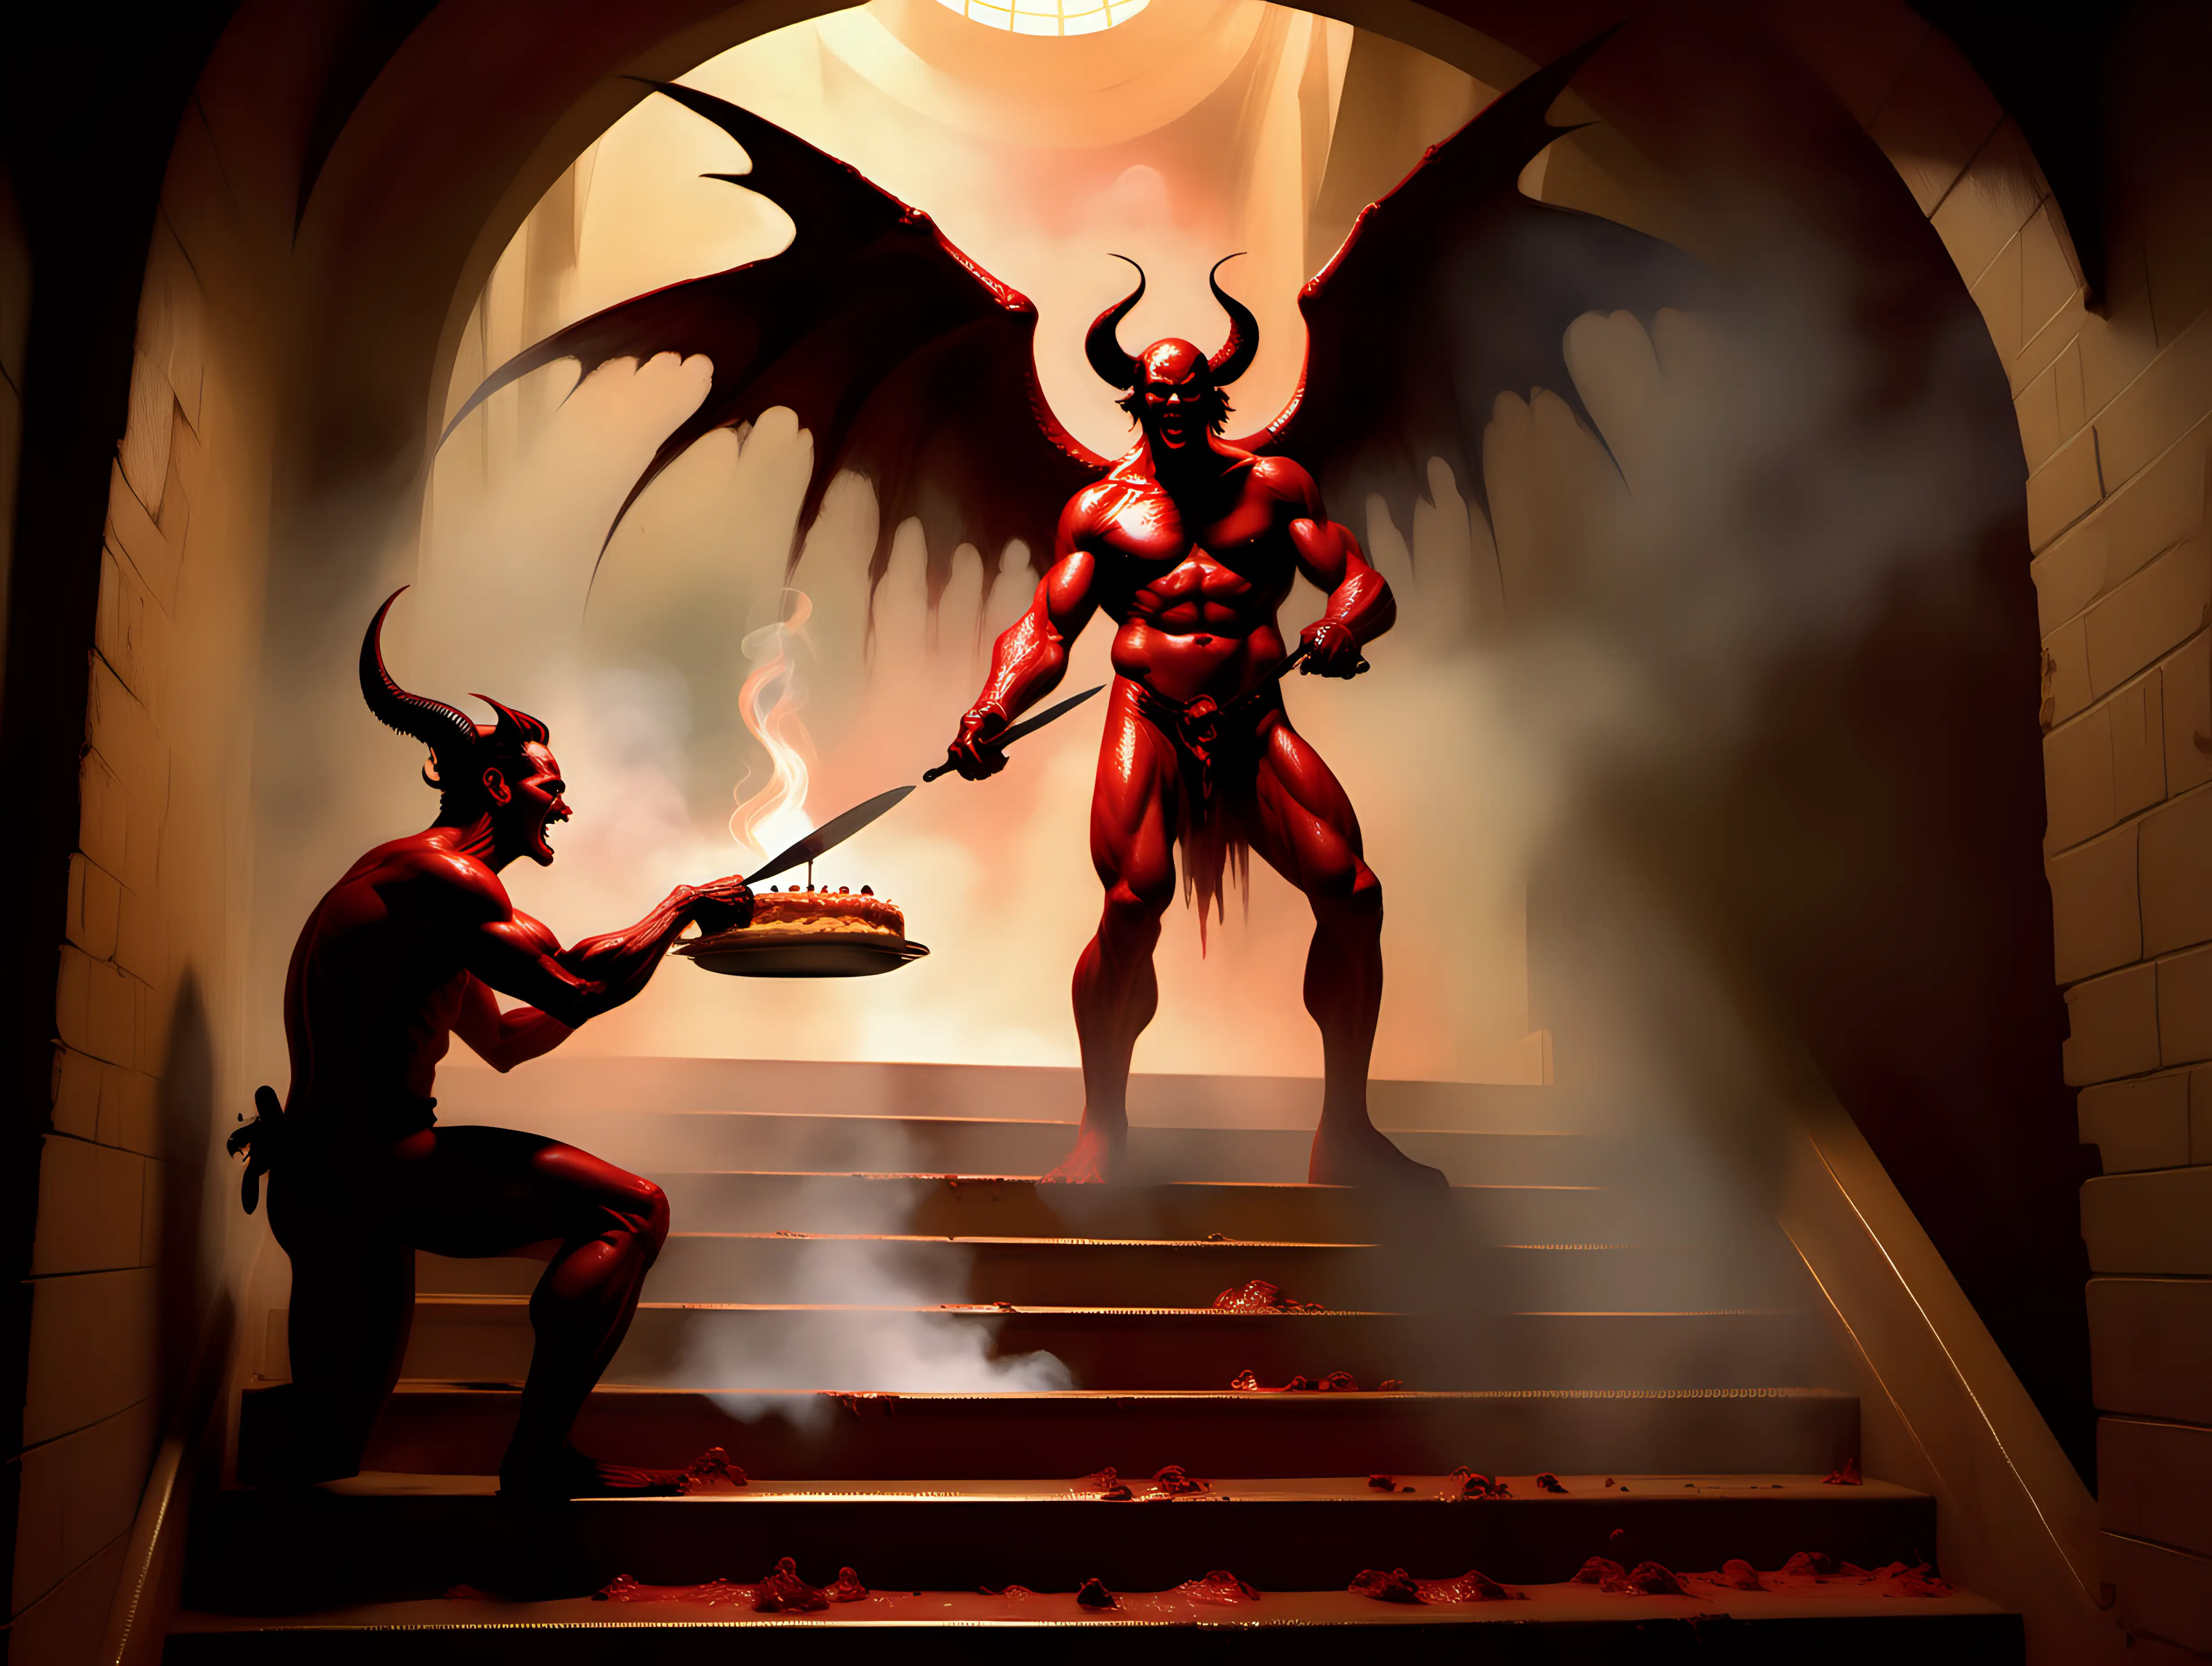 Satan vs Michael Epic Bake Off in Hells Second Stairwell Digital Art